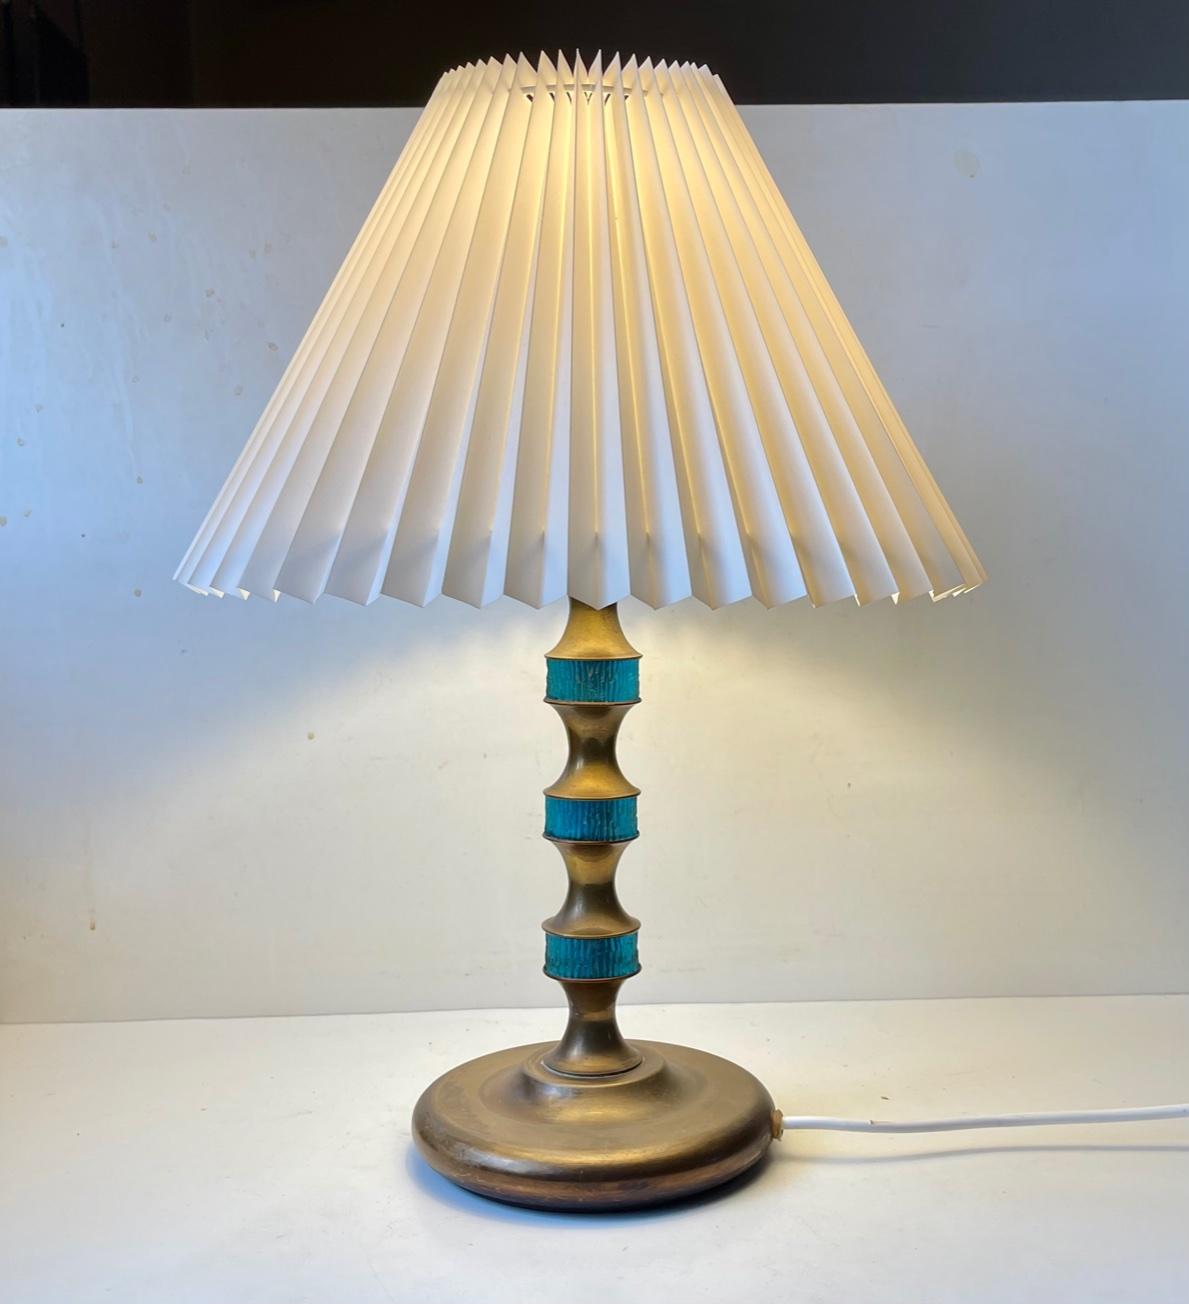 Ultra rare lampe de table conçue et fabriquée par Vitrika au Danemark dans les années 1960. Il comporte une tige en laiton patiné massif sertie d'inserts en verre épais texturé bleu presque turquoise. Très similaire aux dessins de Carl Fagerlund